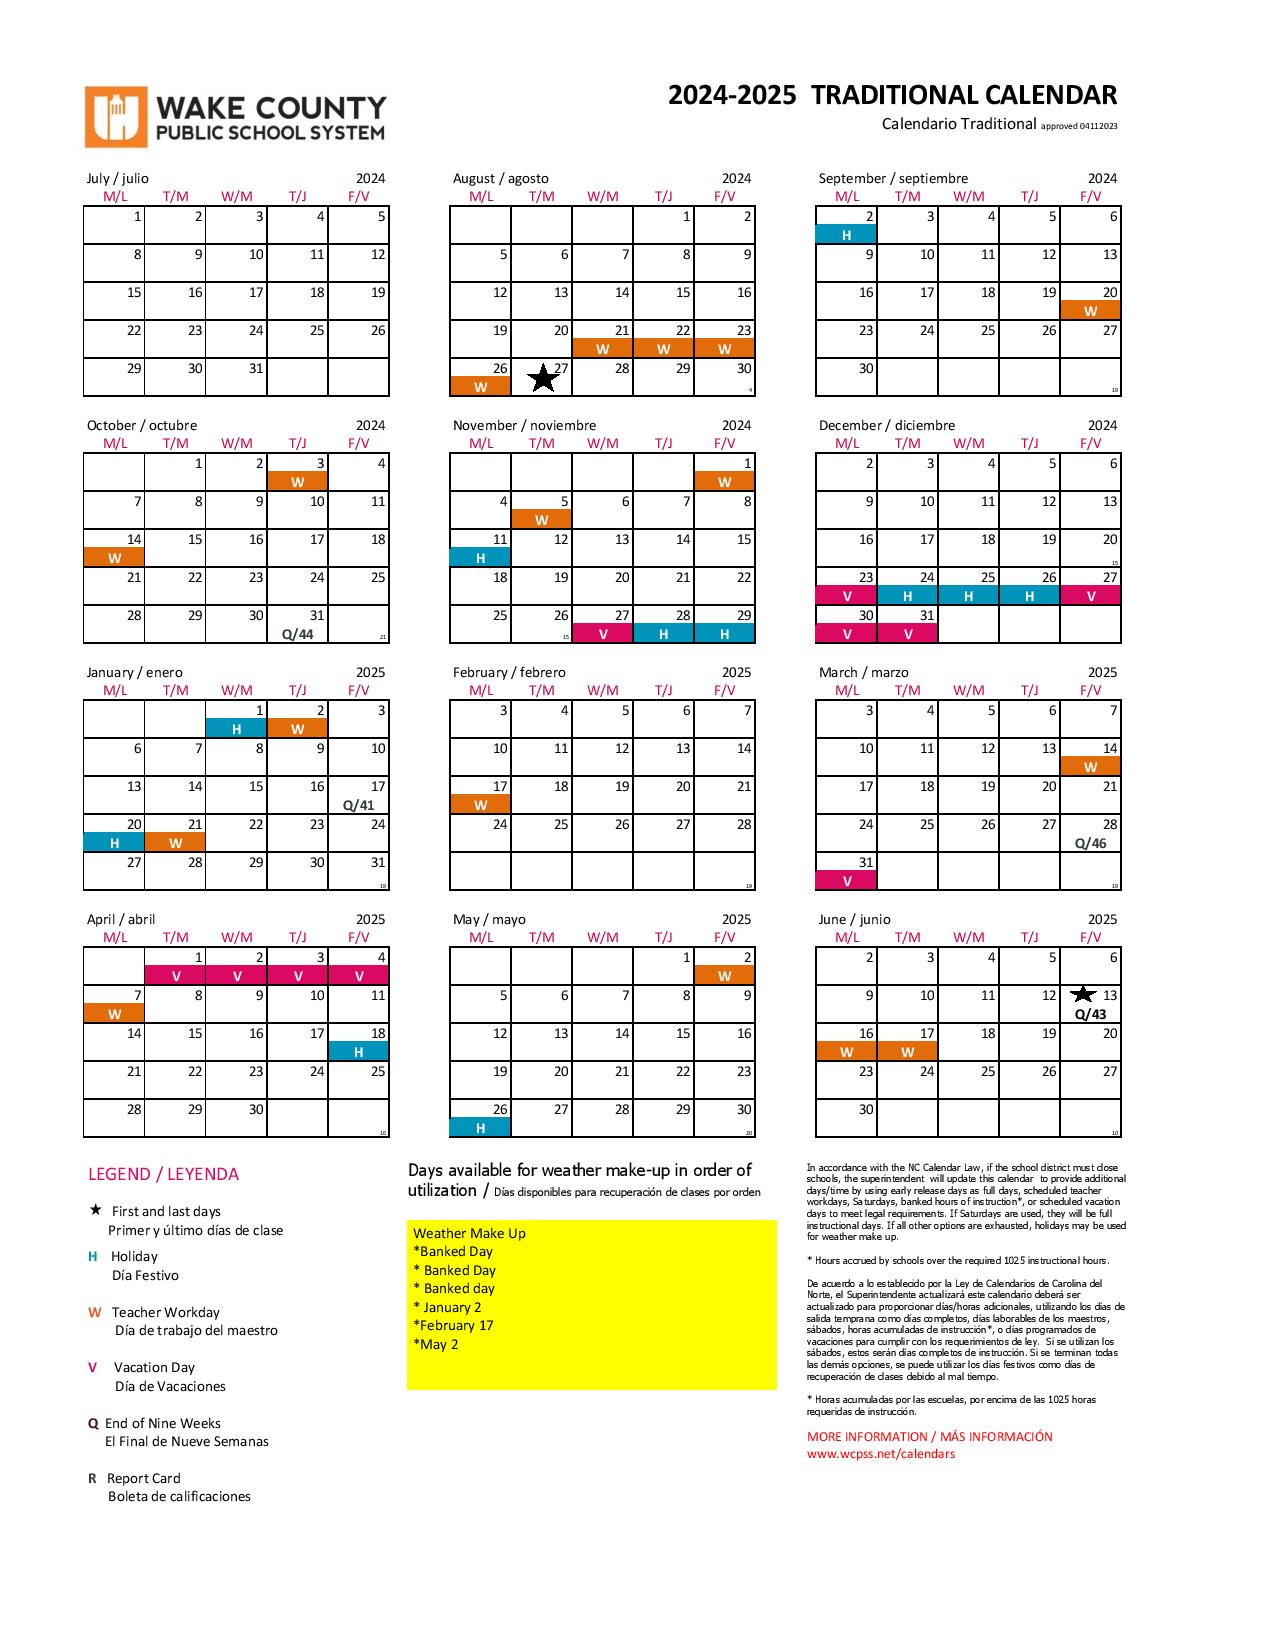 Wake County Public Schools Calendar Holidays 20242025 PDF